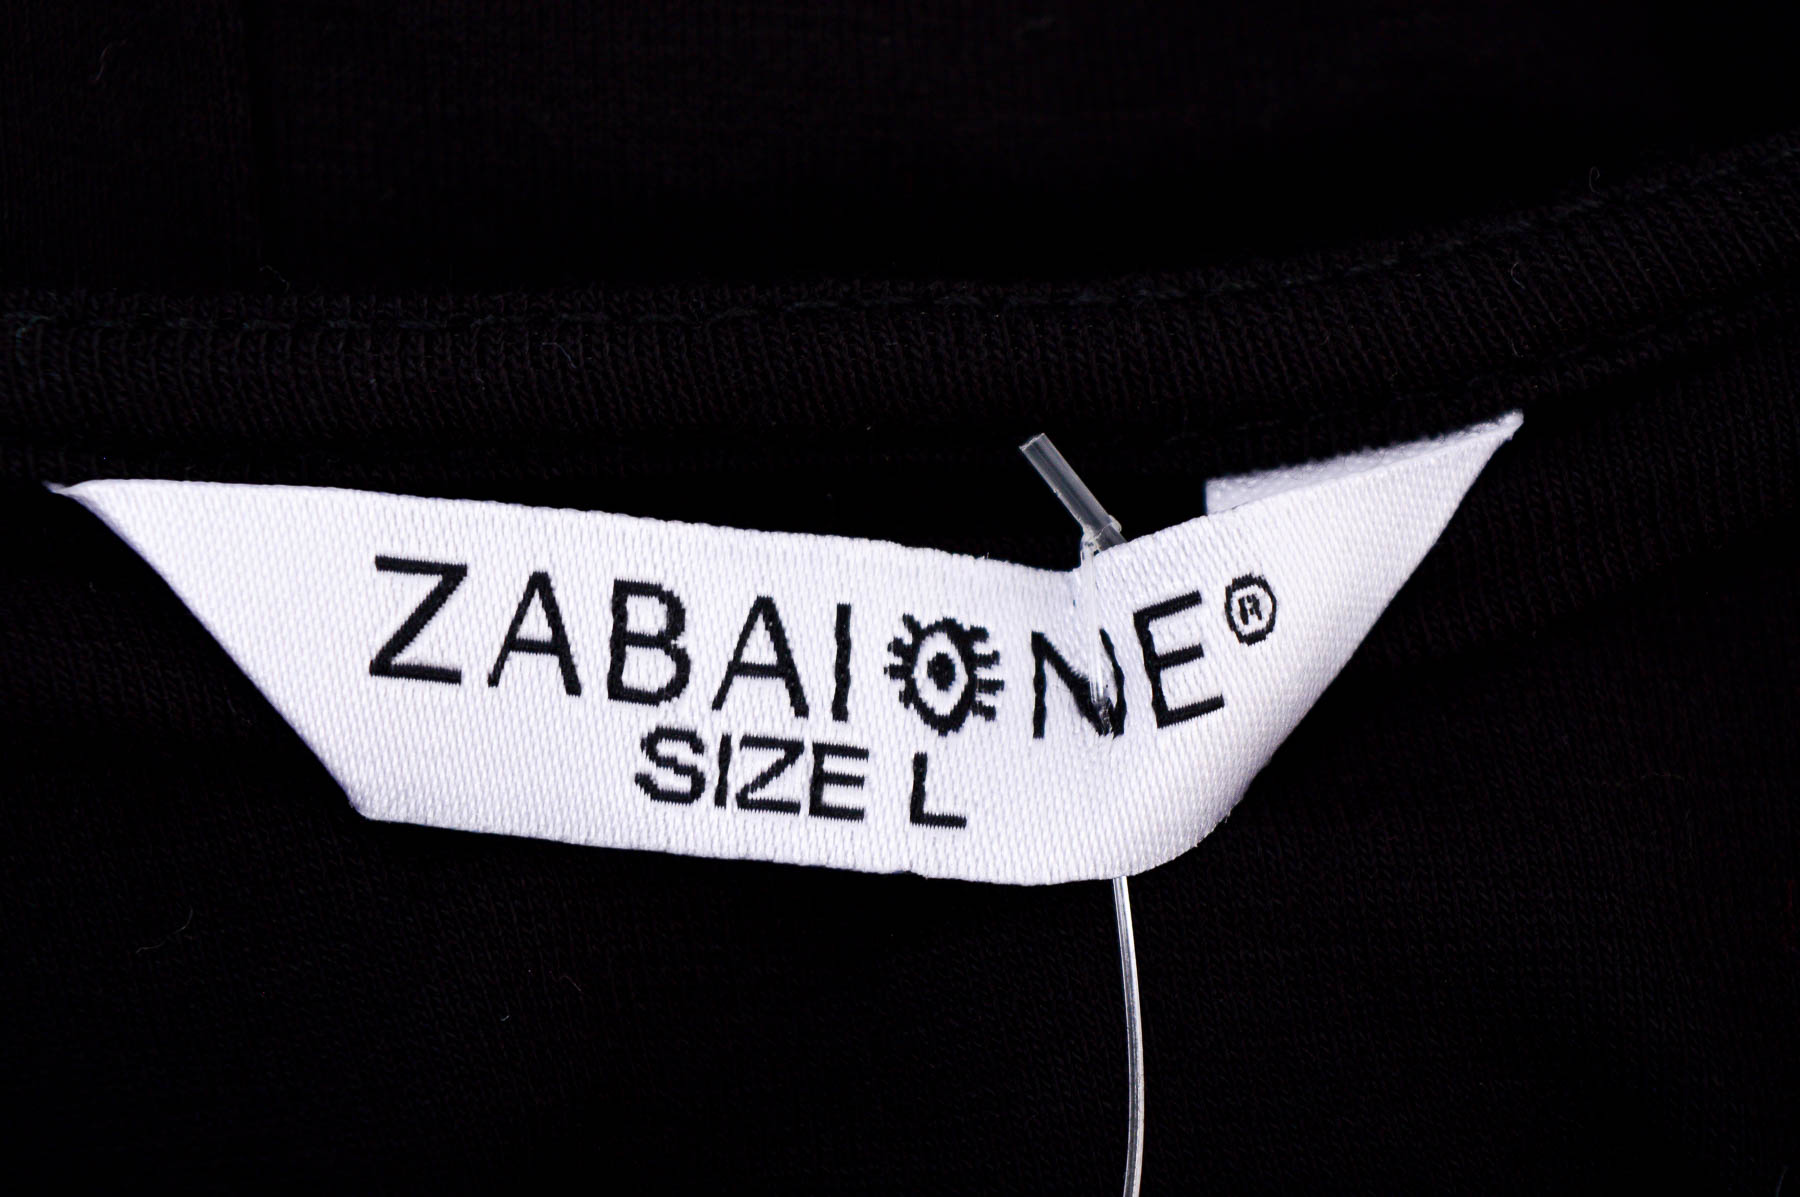 Bluza de damă - Zabaione - 2